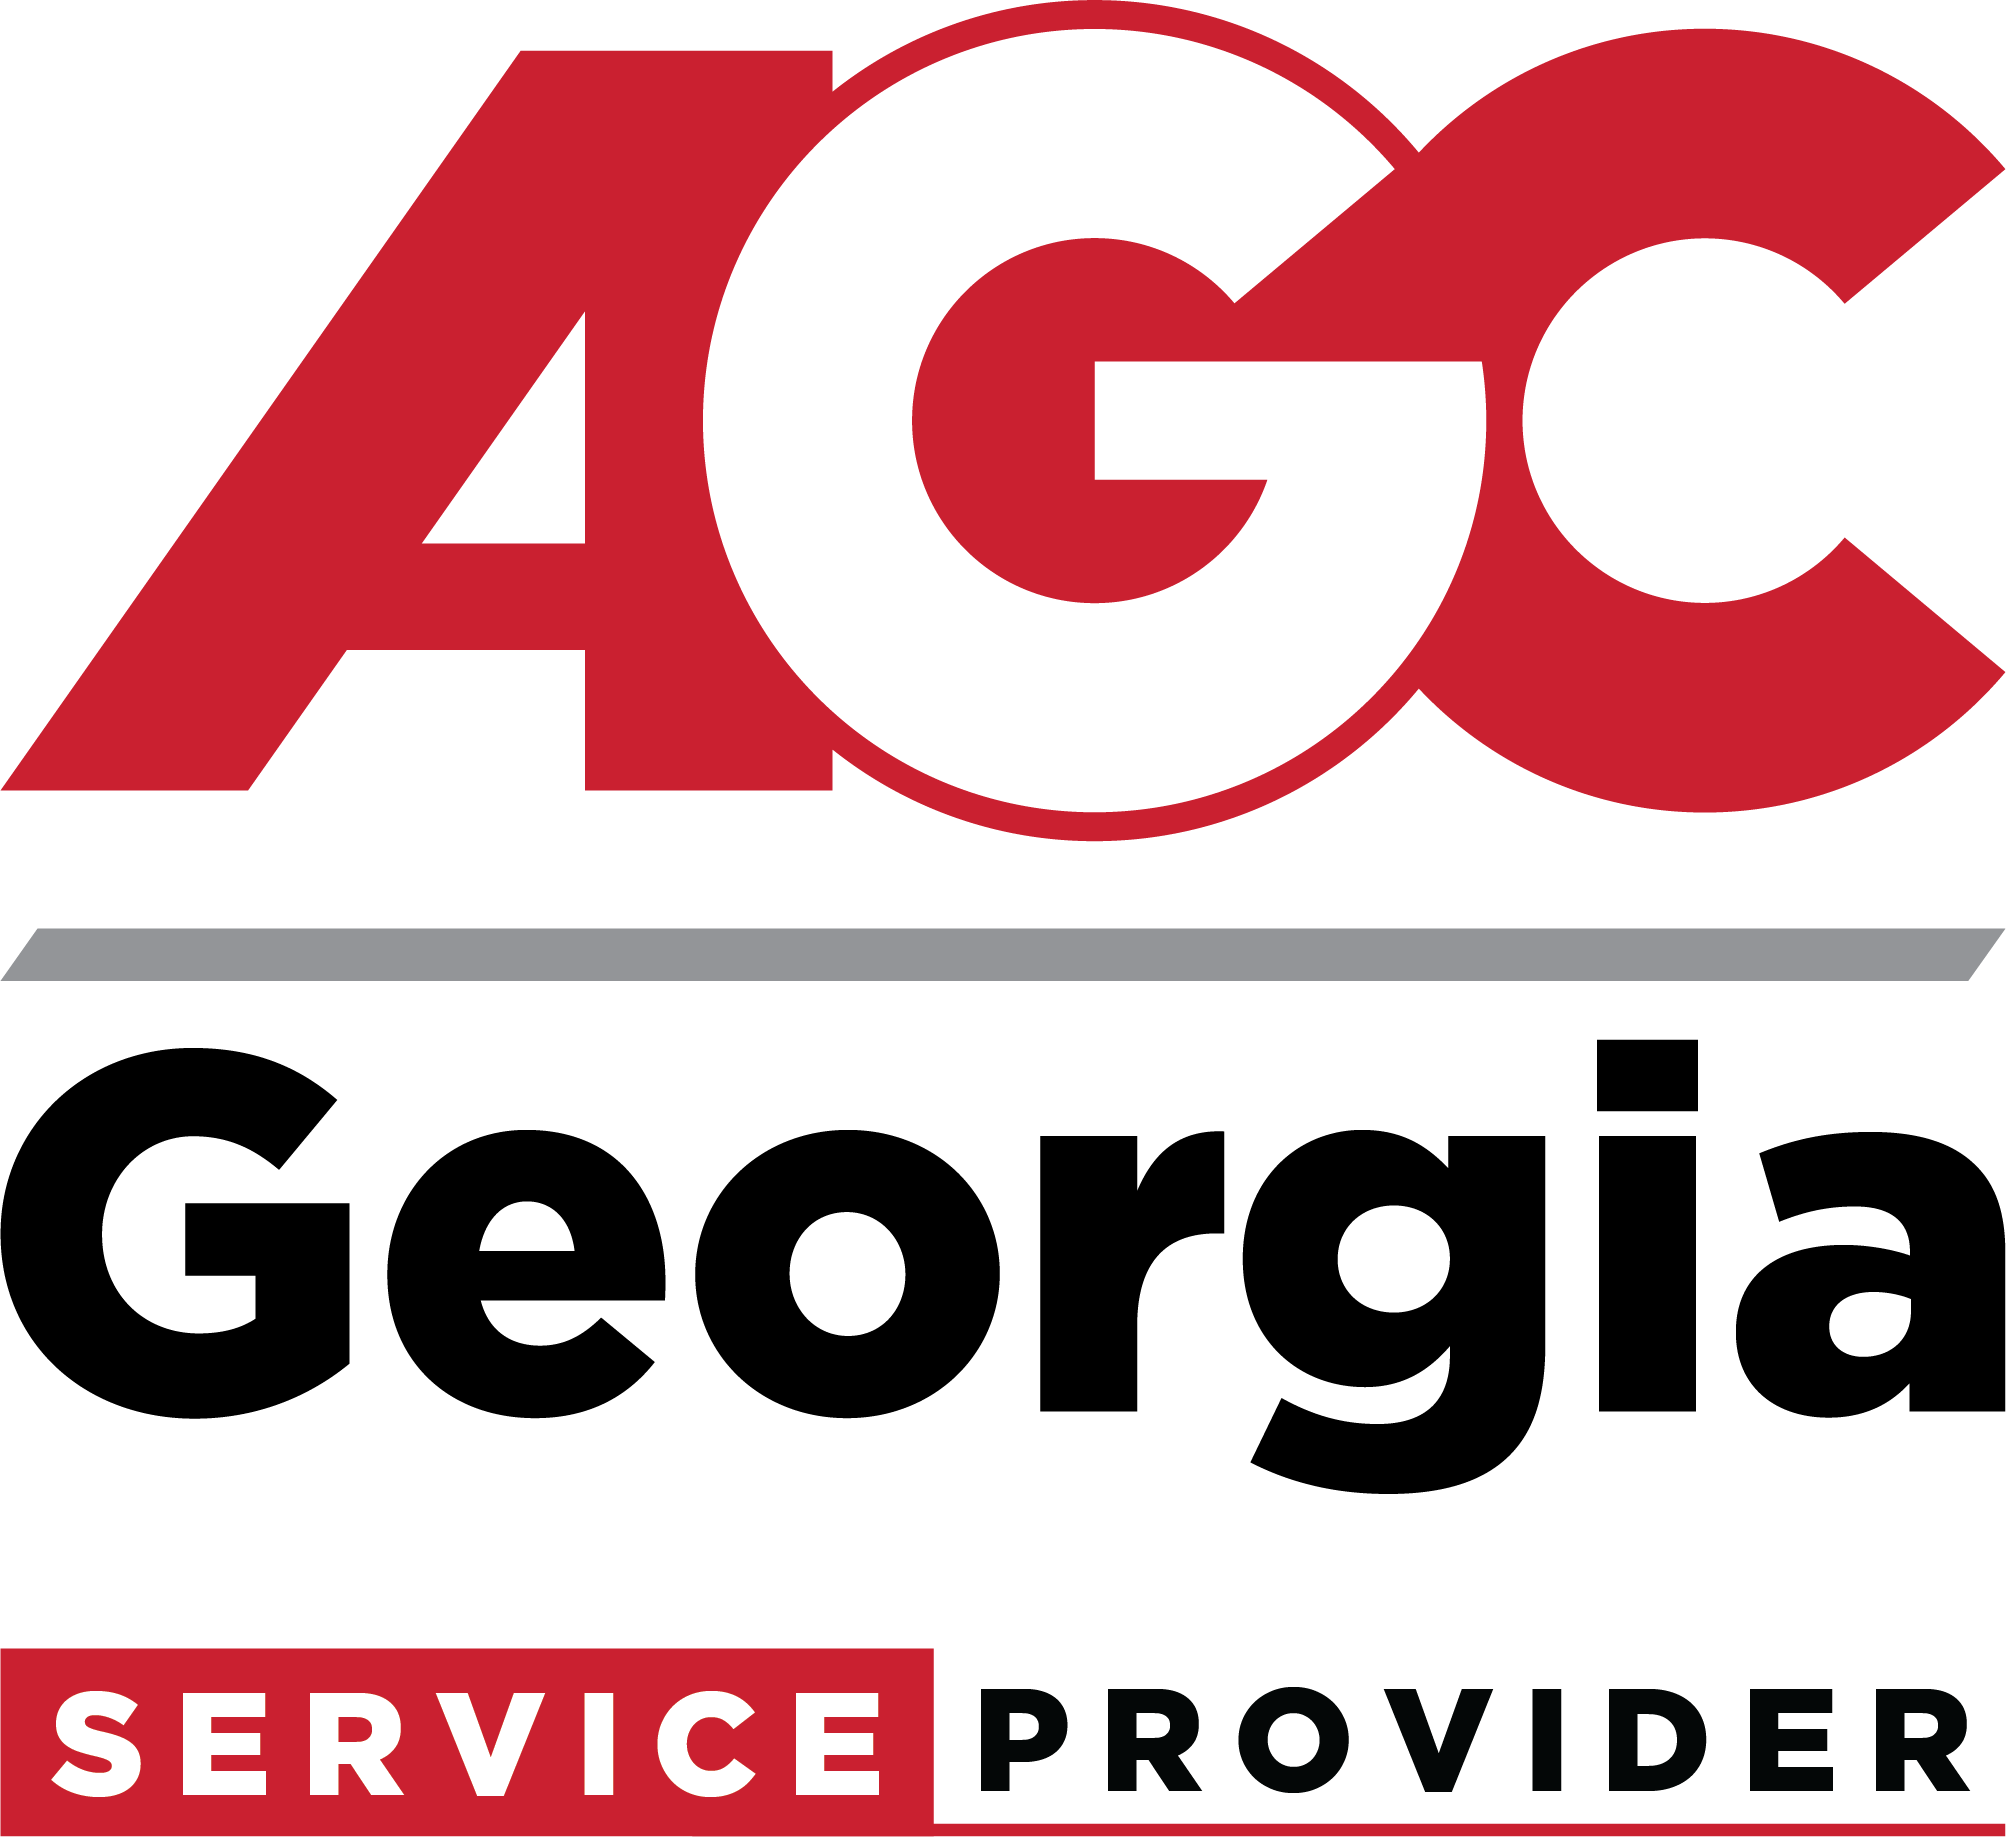 AGC Georgia